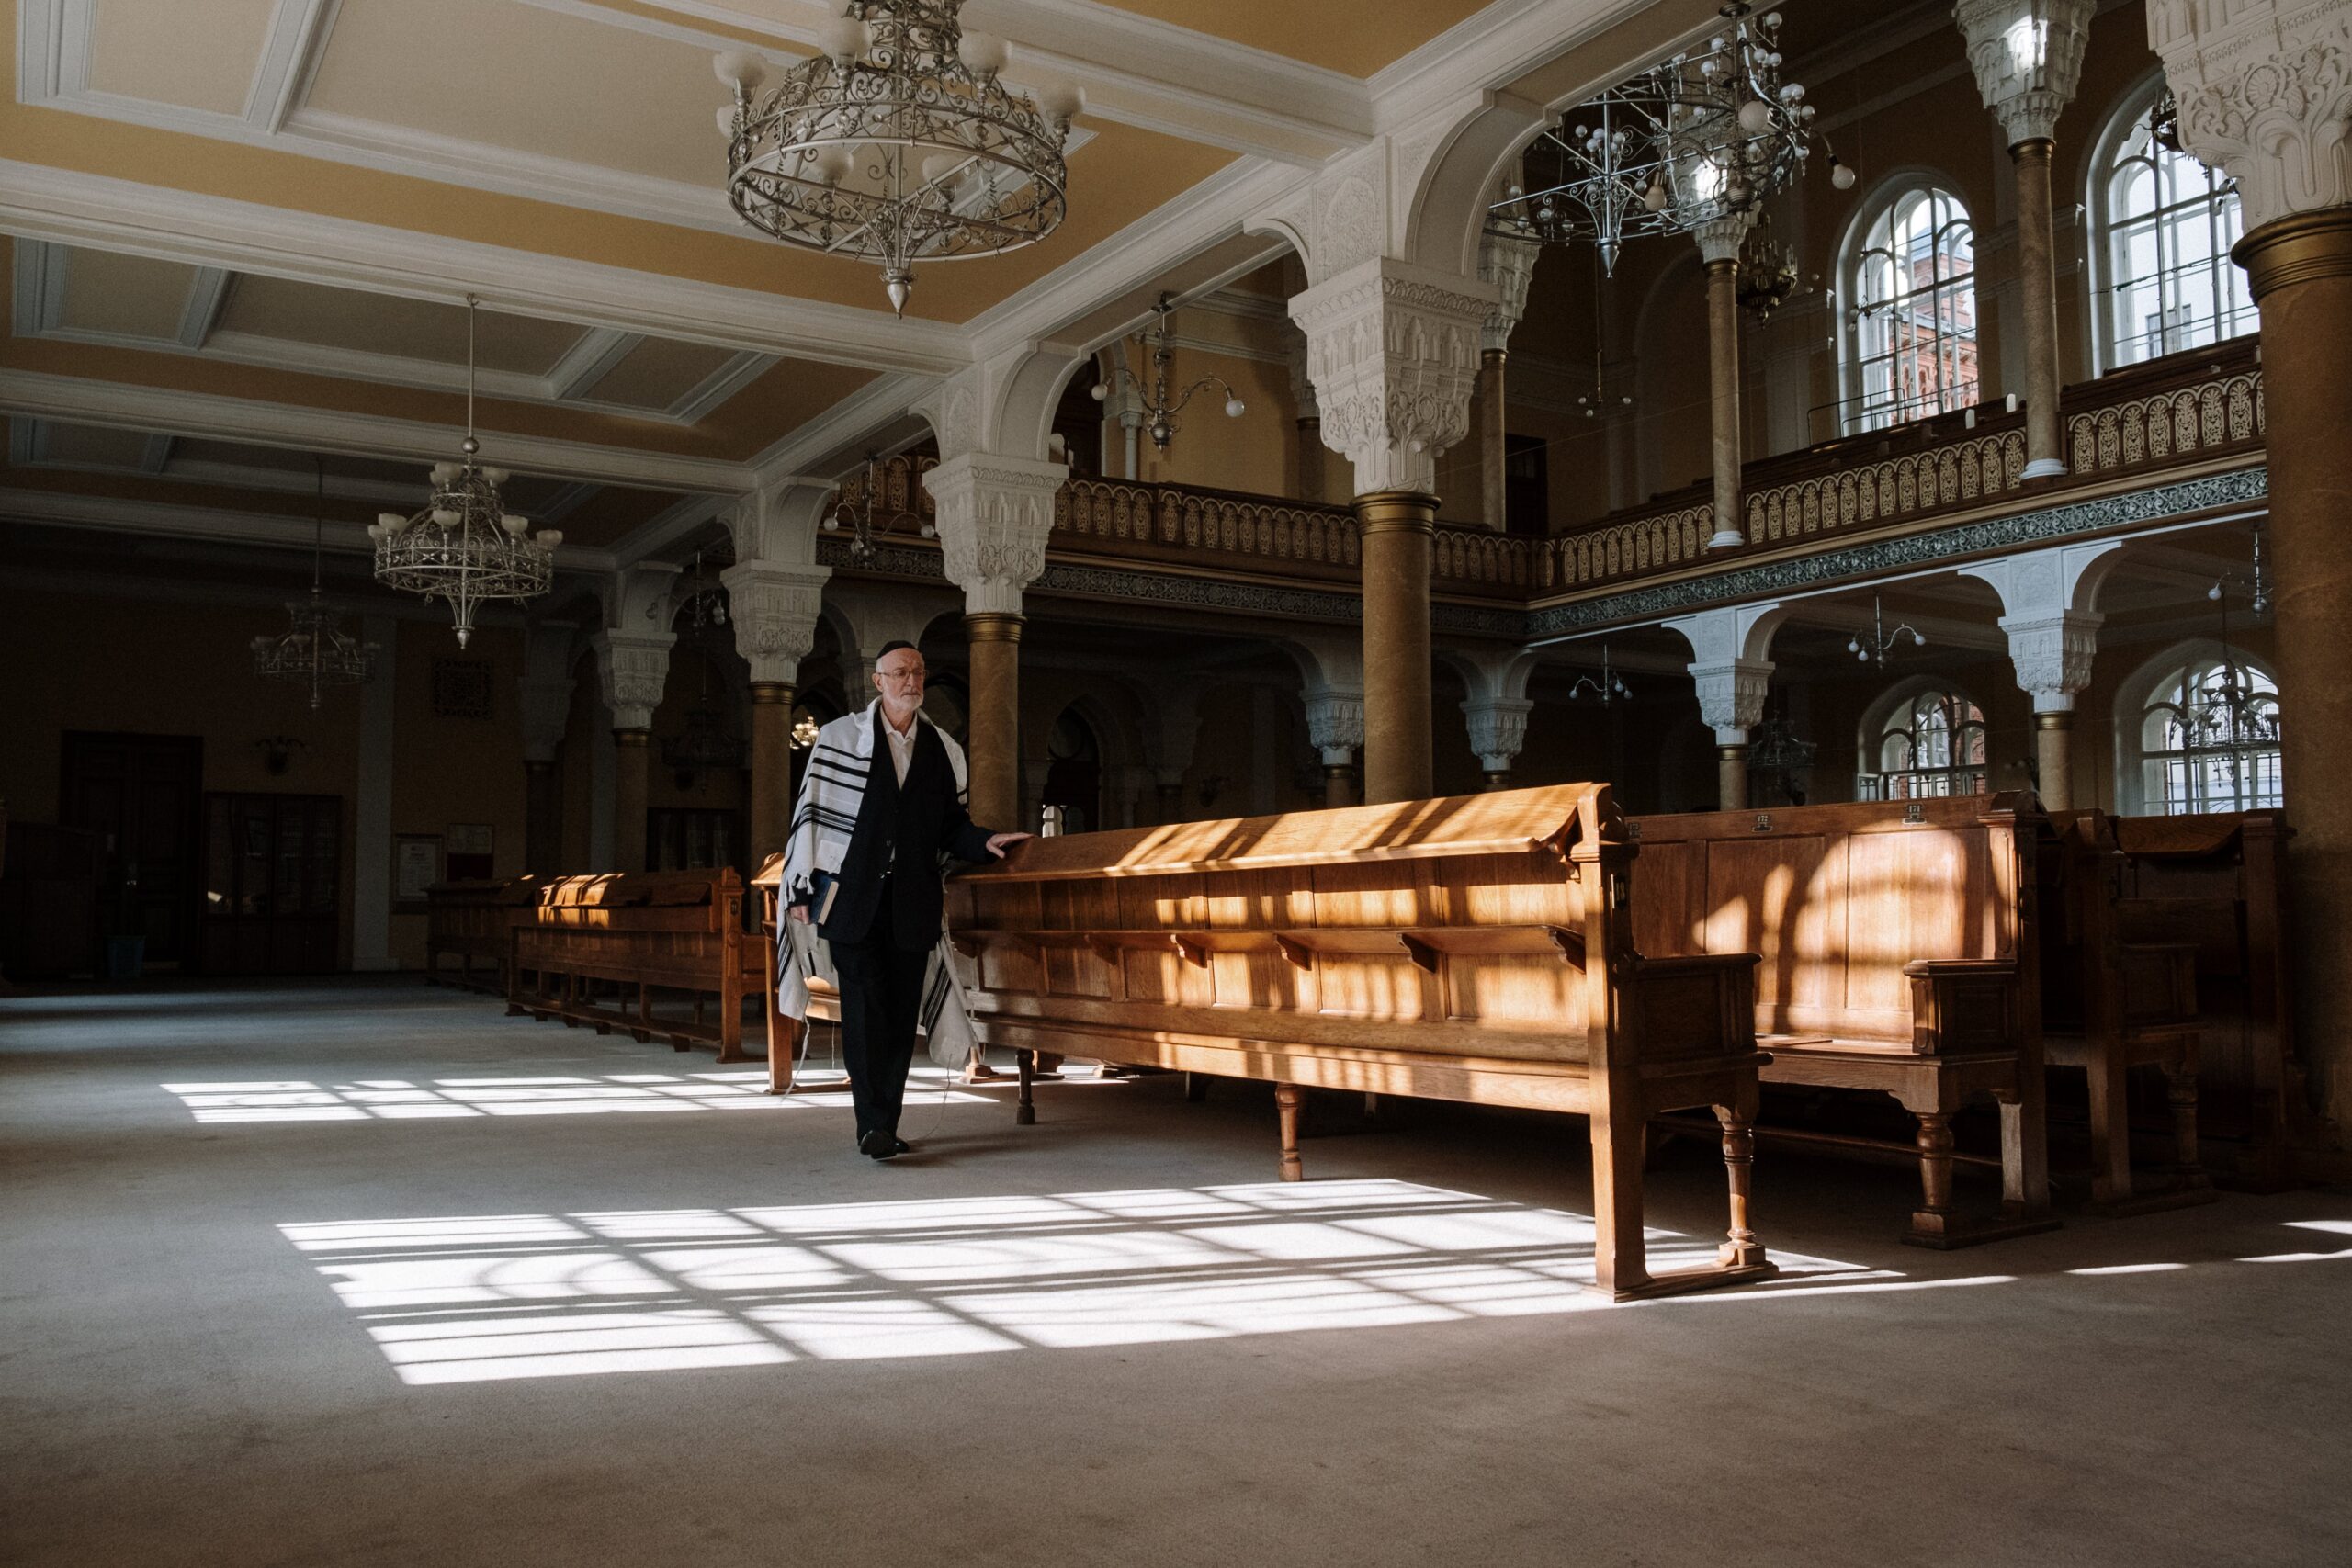 Niezwykłe opowieści o polskich synagogach, które Cię poruszą